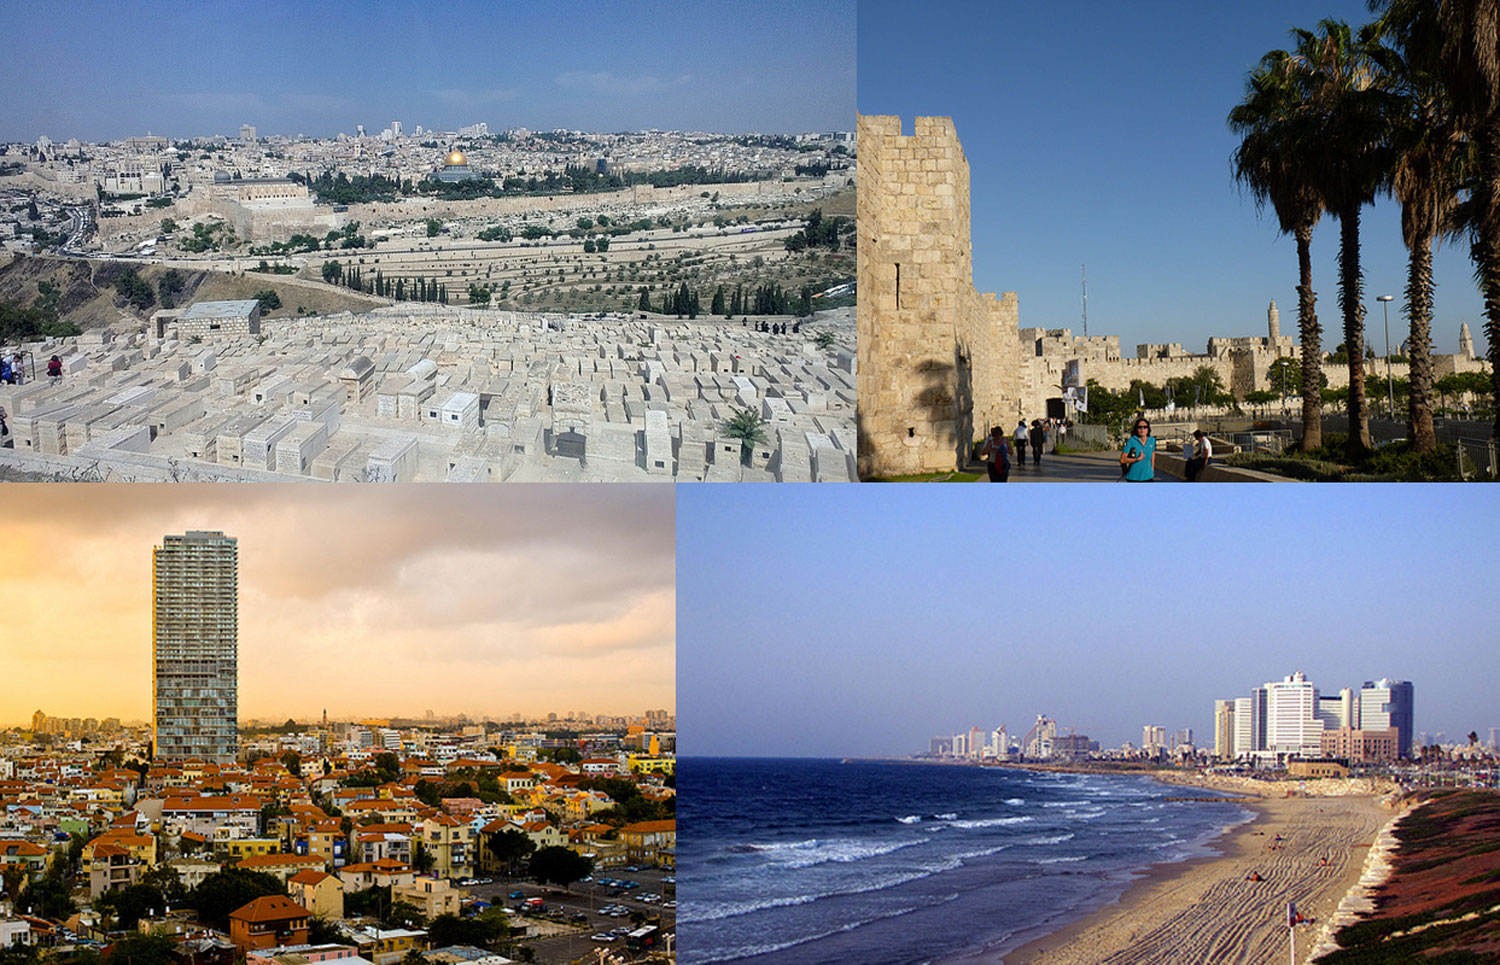 Fakta: Jerusalem og Tel Aviv er de to største byer i Israel.